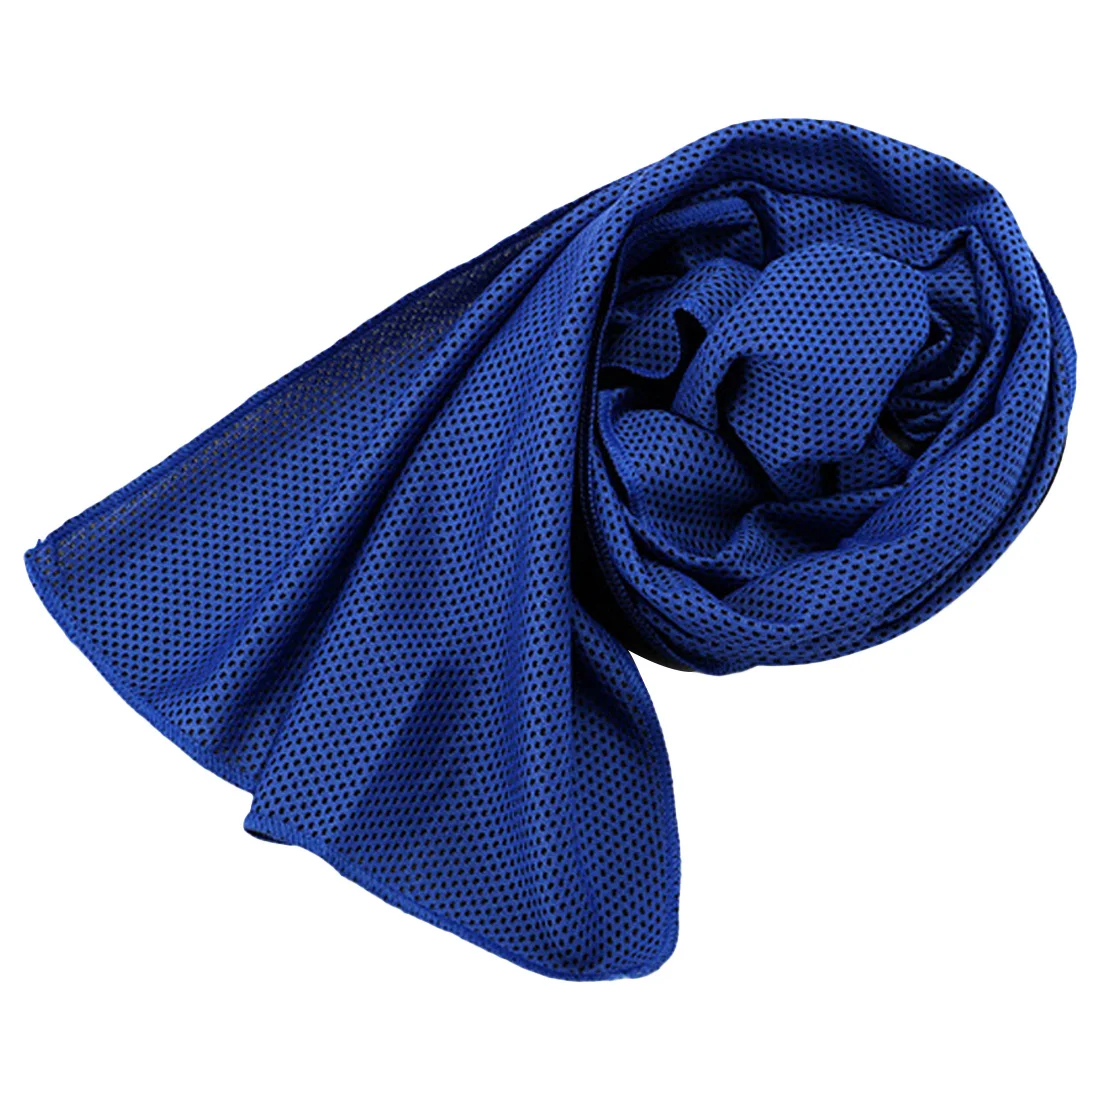 Микрофибра ткань быстросохнущее полотенце для льда быстрое охлаждающее спортивное полотенце фитнес Йога скалолазание спортивное полотенце для занятий на открытом воздухе многоразовое прохладное - Цвет: Navy blue